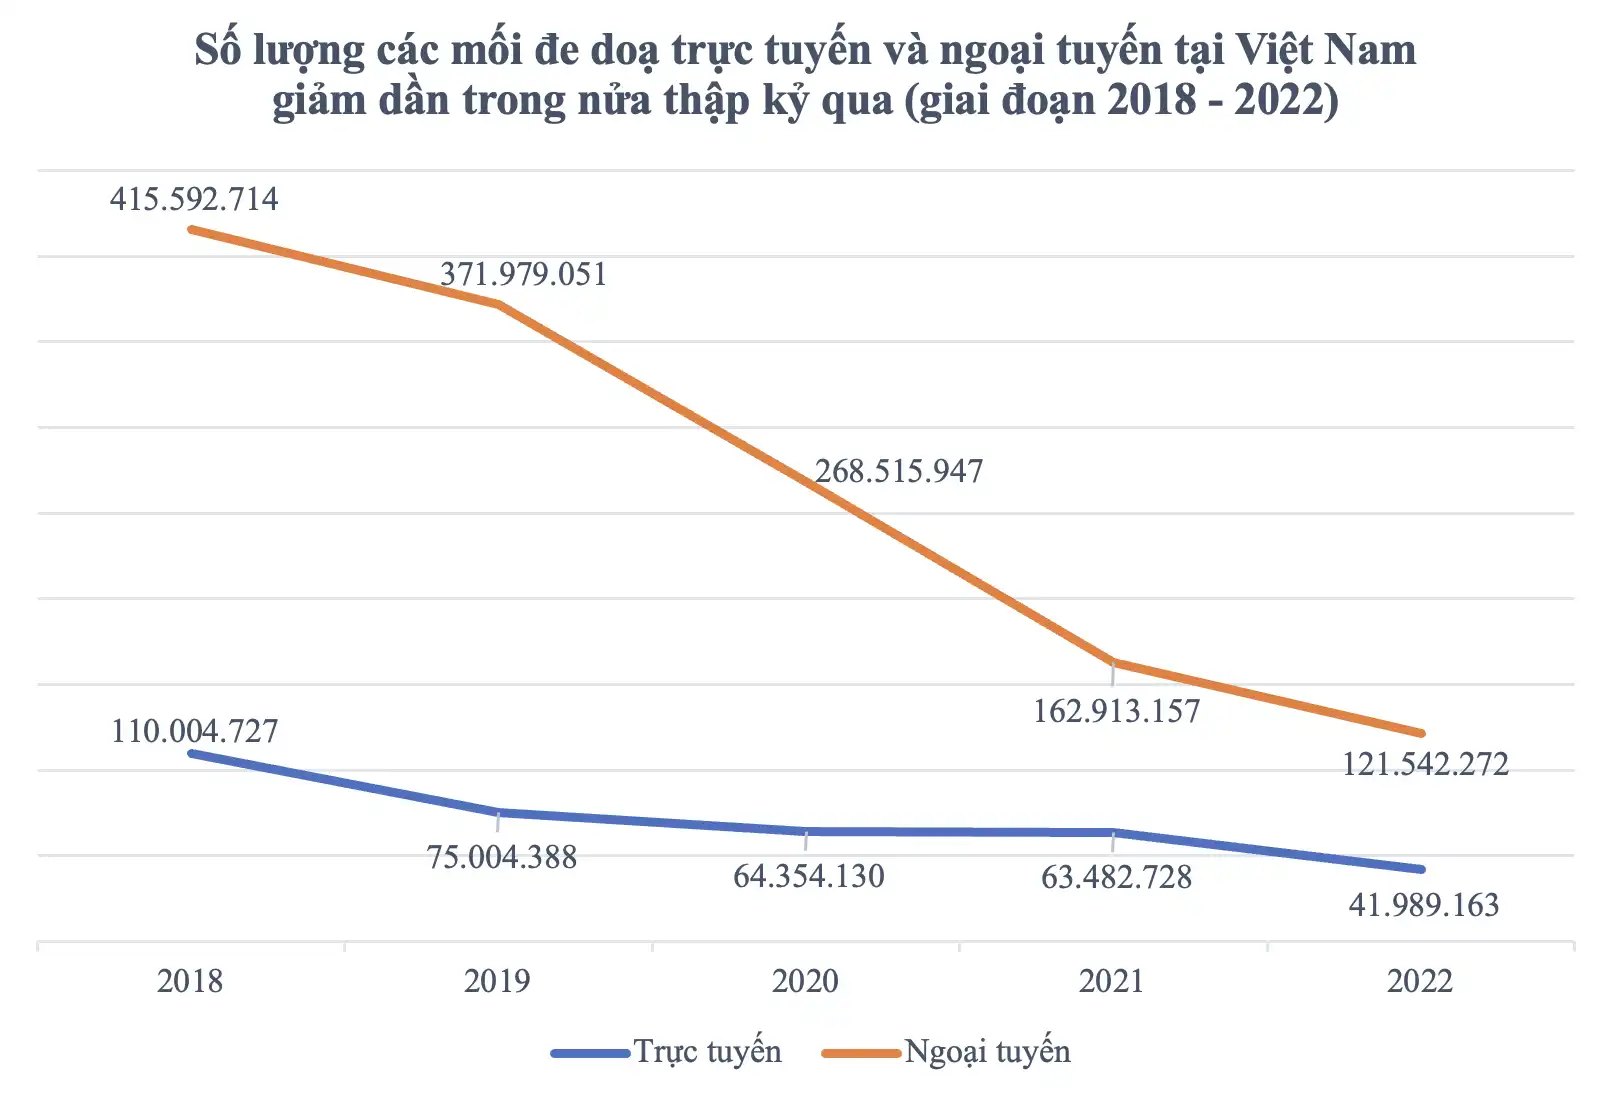 Kaspersky: Các mối đe dọa trực tuyến tại Việt Nam giảm mạnh trong năm 2022